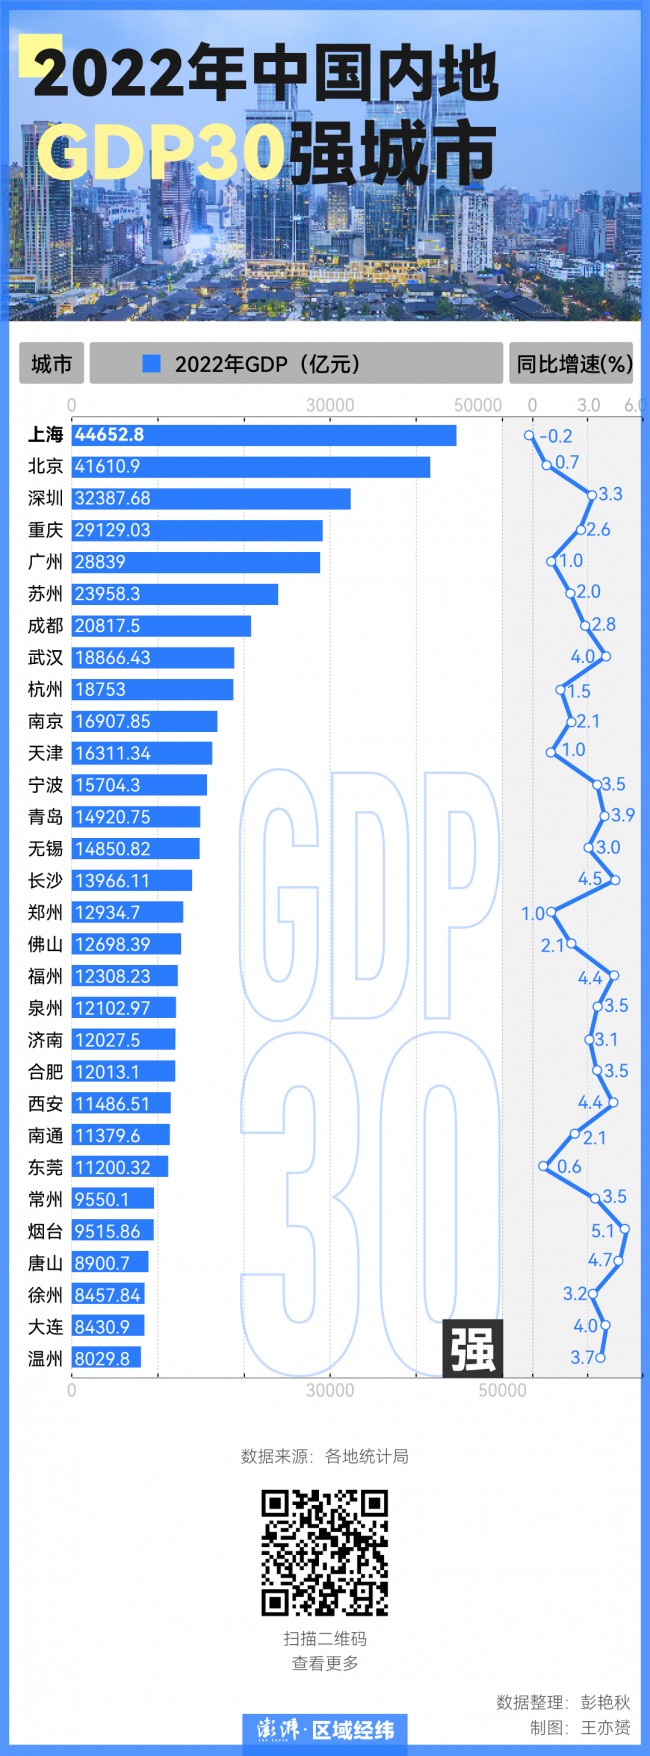 출처: 펑파이신문(澎湃新闻), 각 지역 통계국 데이터 참고